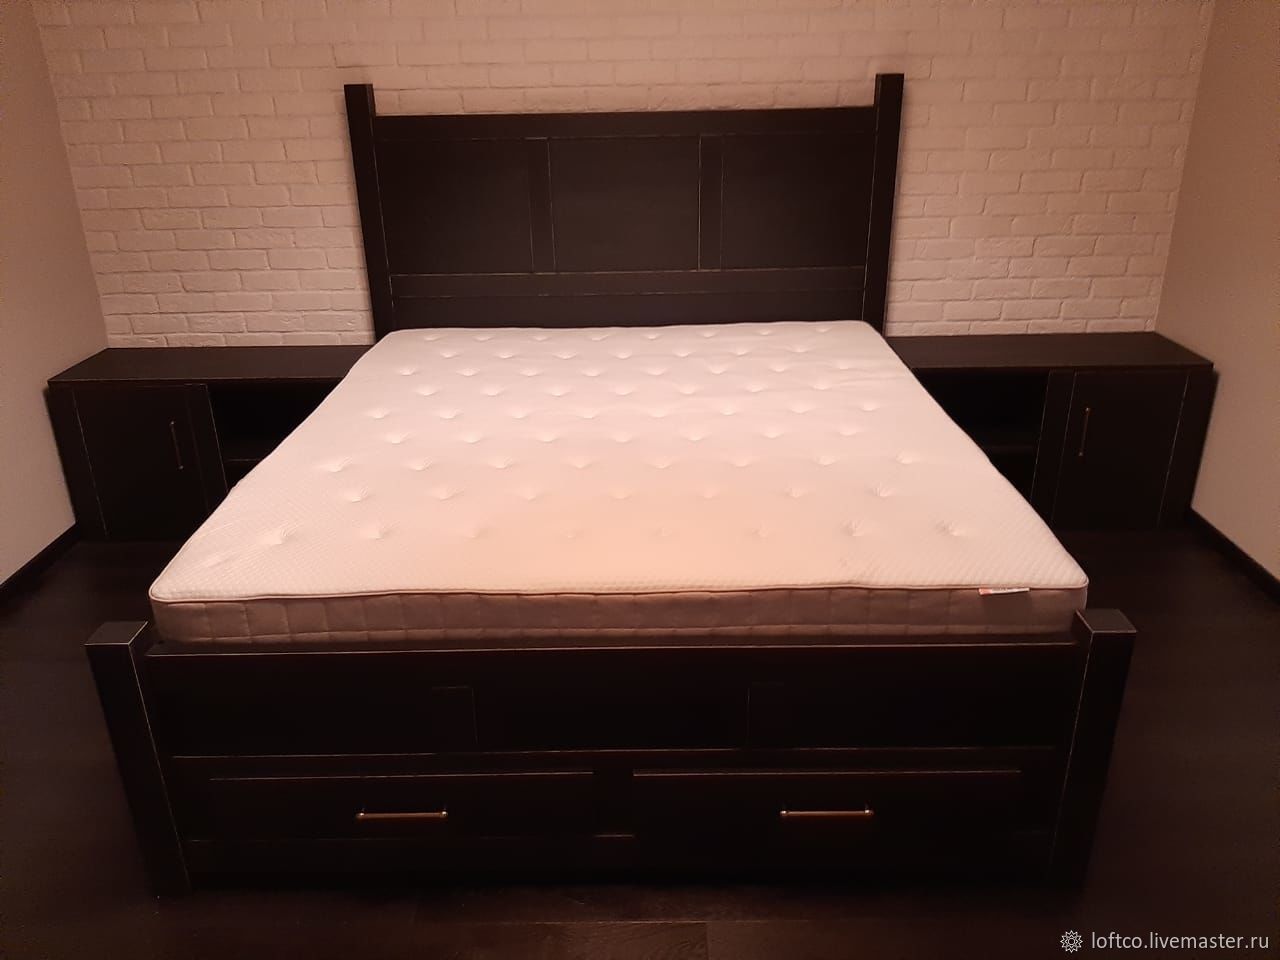 Шкаф продан могу предложить никелированную кровать с тумбочкой